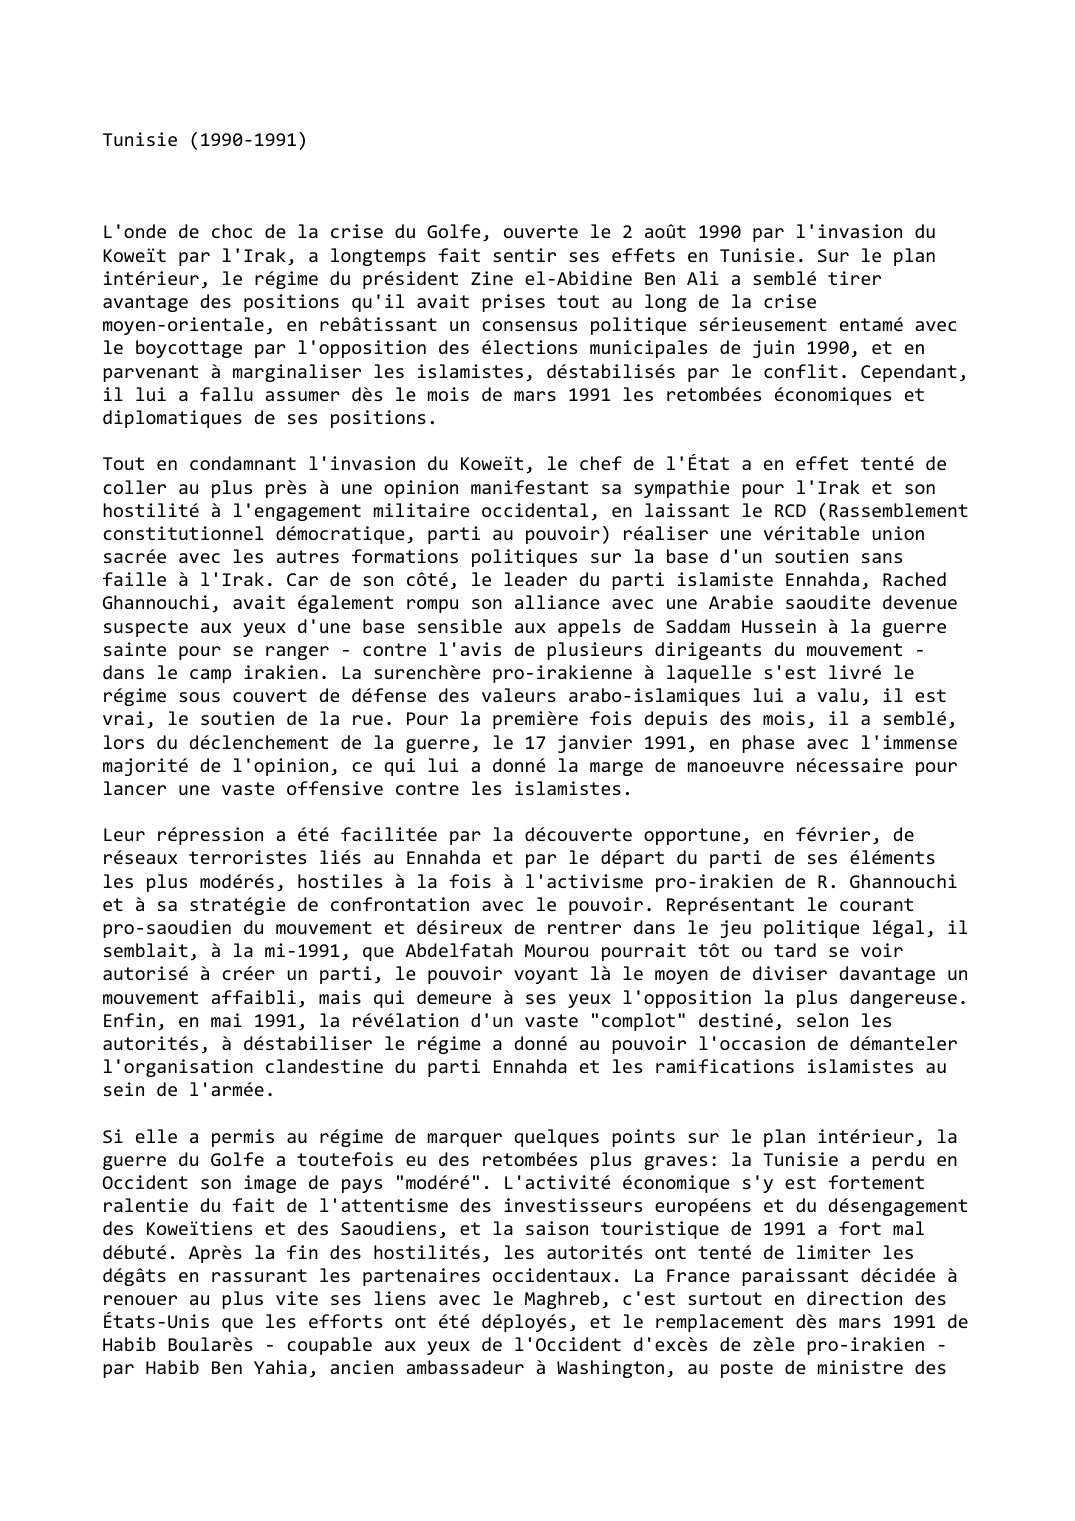 Prévisualisation du document Tunisie (1990-1991)